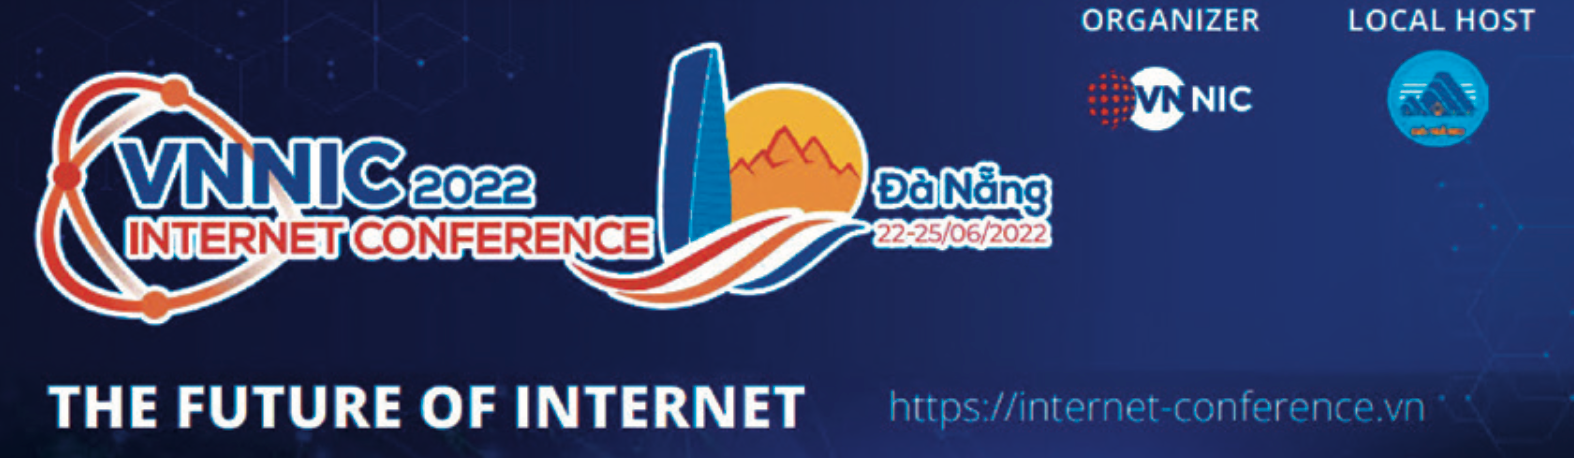 VNNIC Internet Conference - Diễn đàn mới chuyên sâu về Internet, công nghệ tương lai cho cộng đồng Việt Nam  - Ảnh 1.